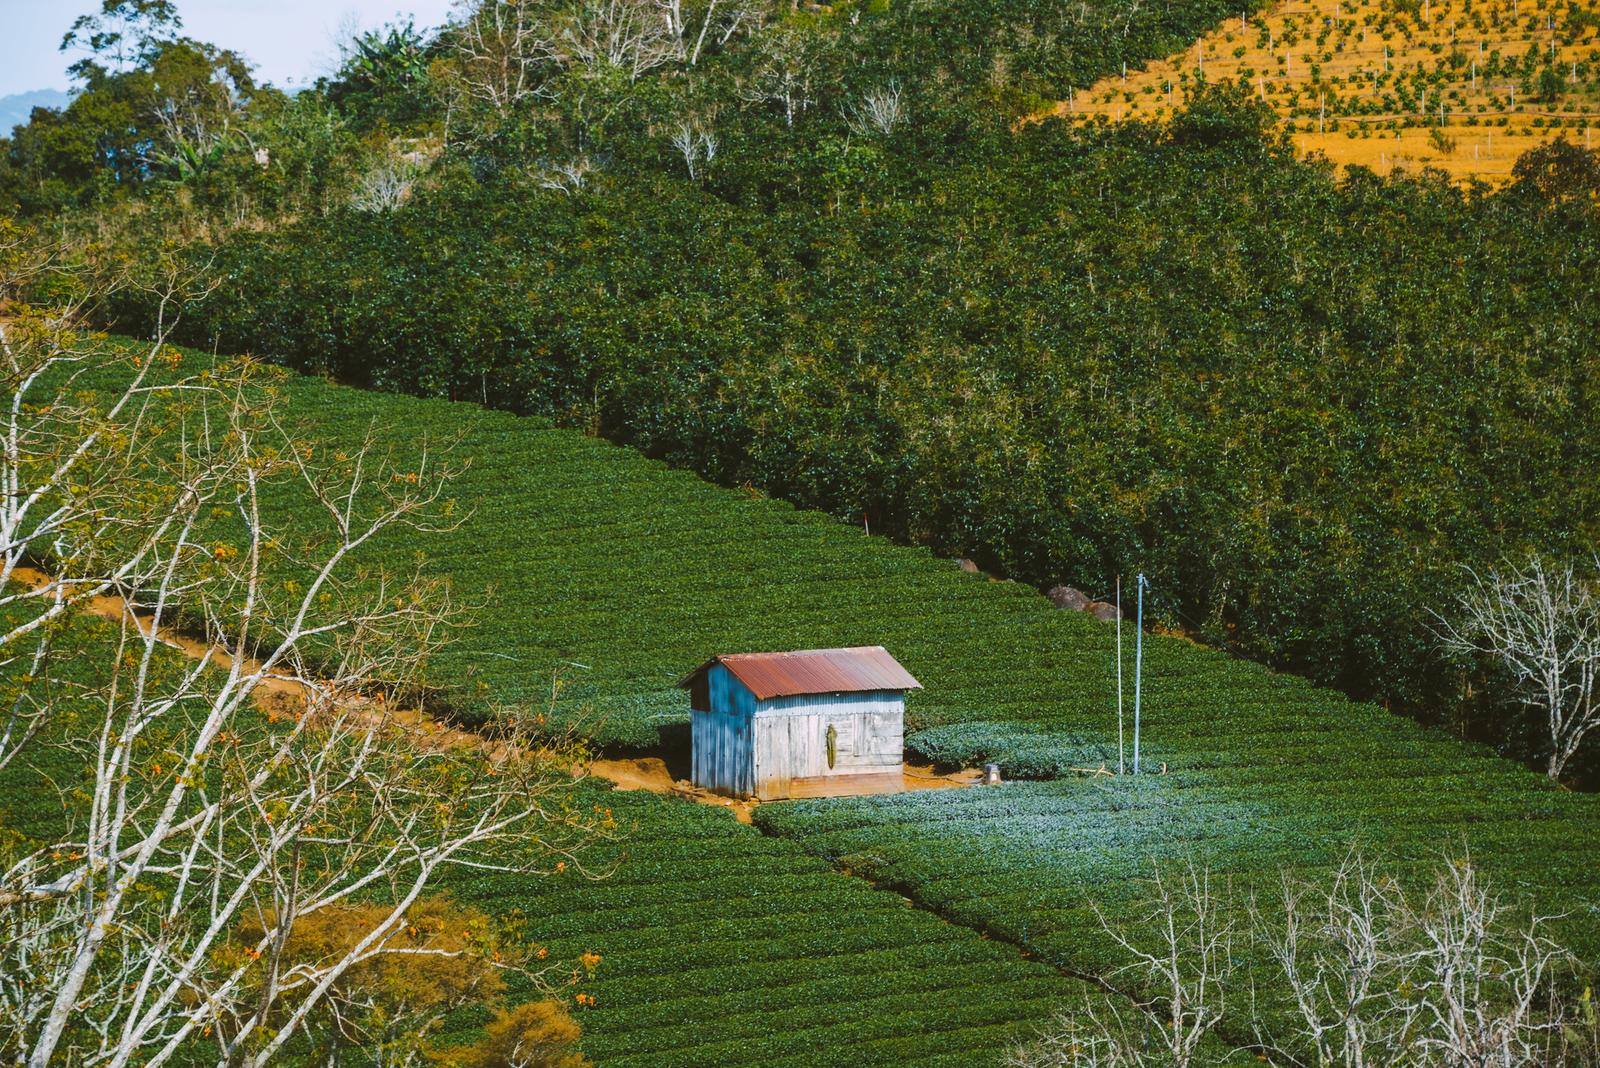 A Hut on the Tea Hill